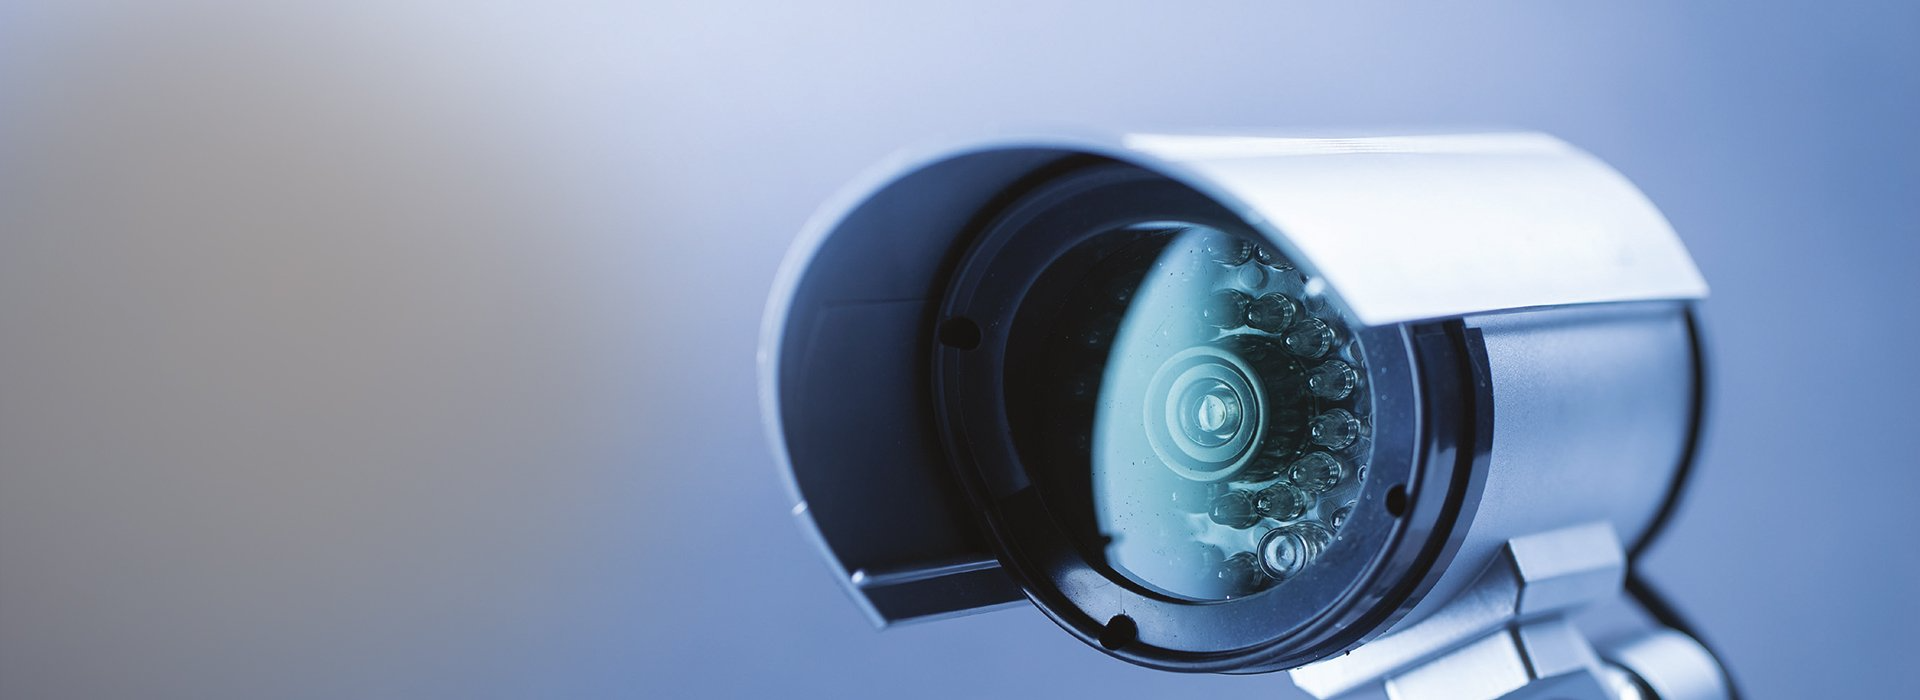 Топ-32 лучших камер видеонаблюдения 2023 года по мнению КП